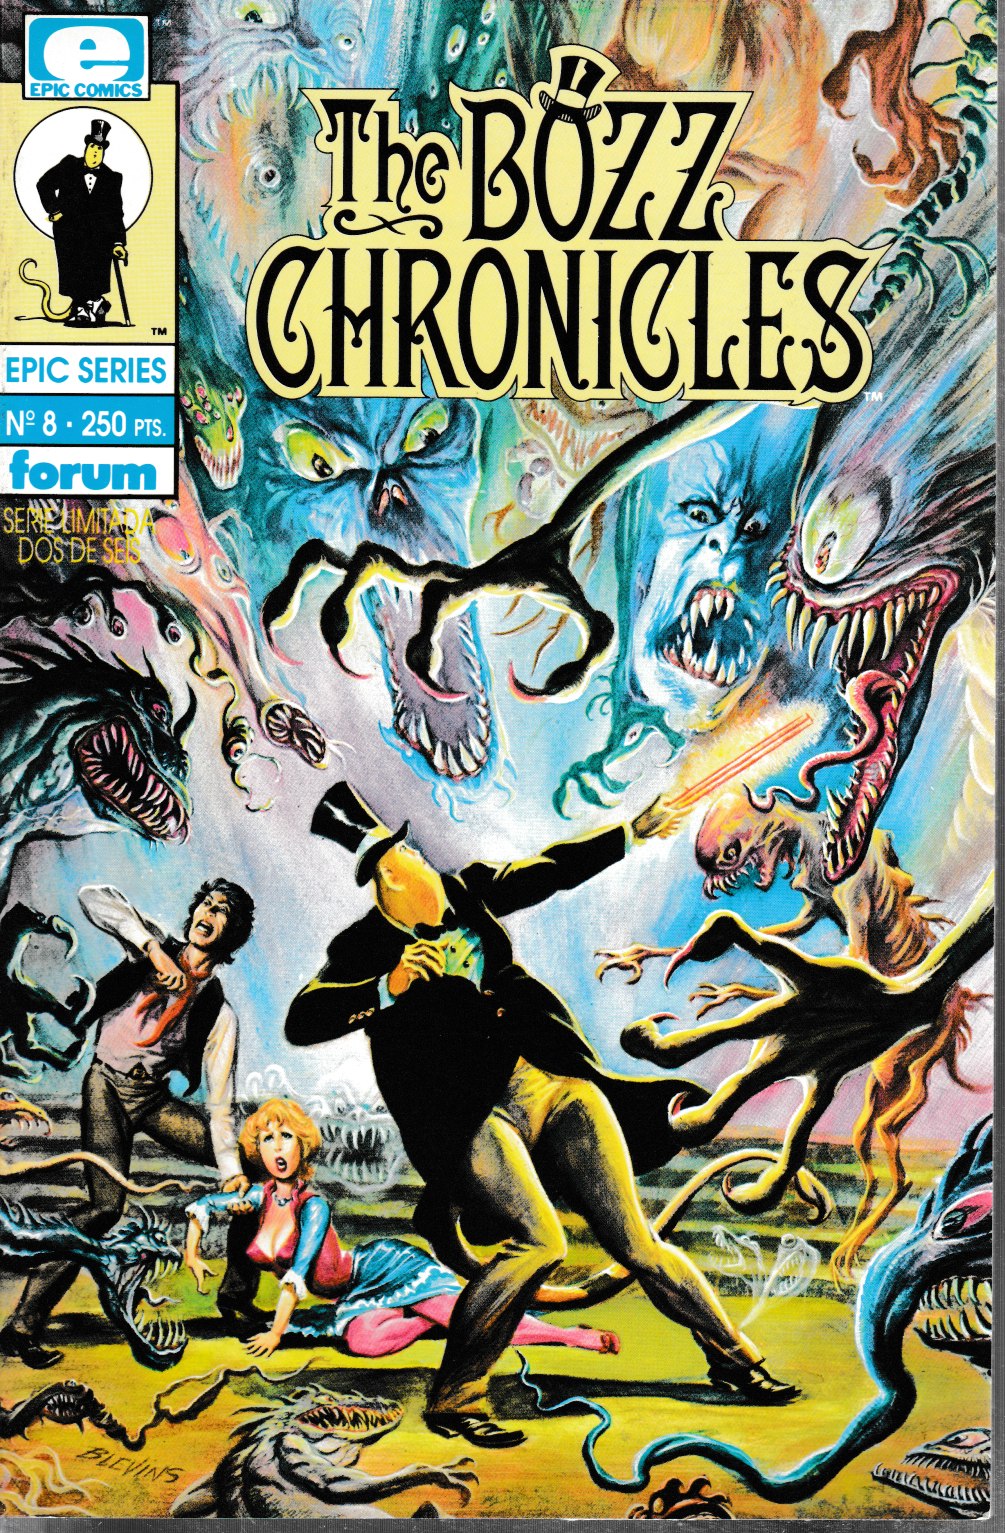 The Bozz Chronicles. Forum 1992. Nº 8